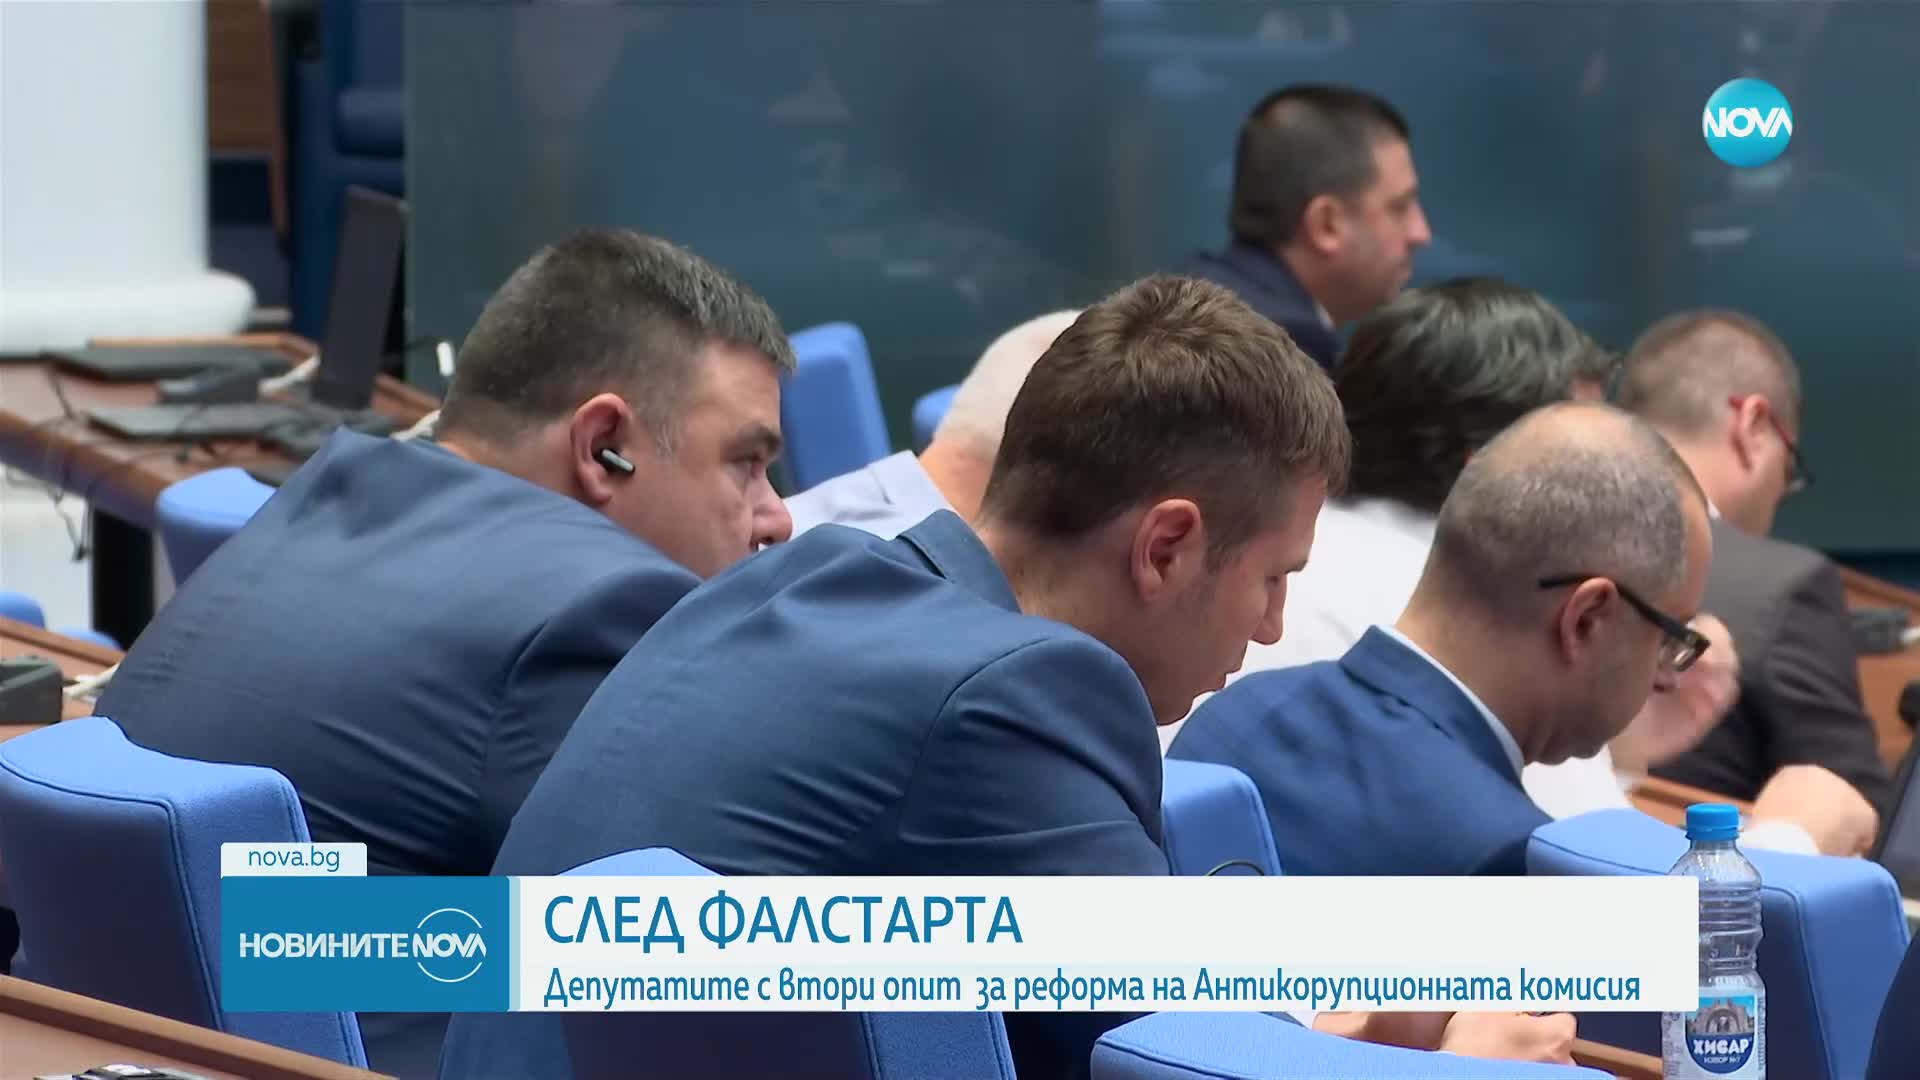 След фалстарта: Депутатите с втори опит за реформа на Антикорупционната комисия